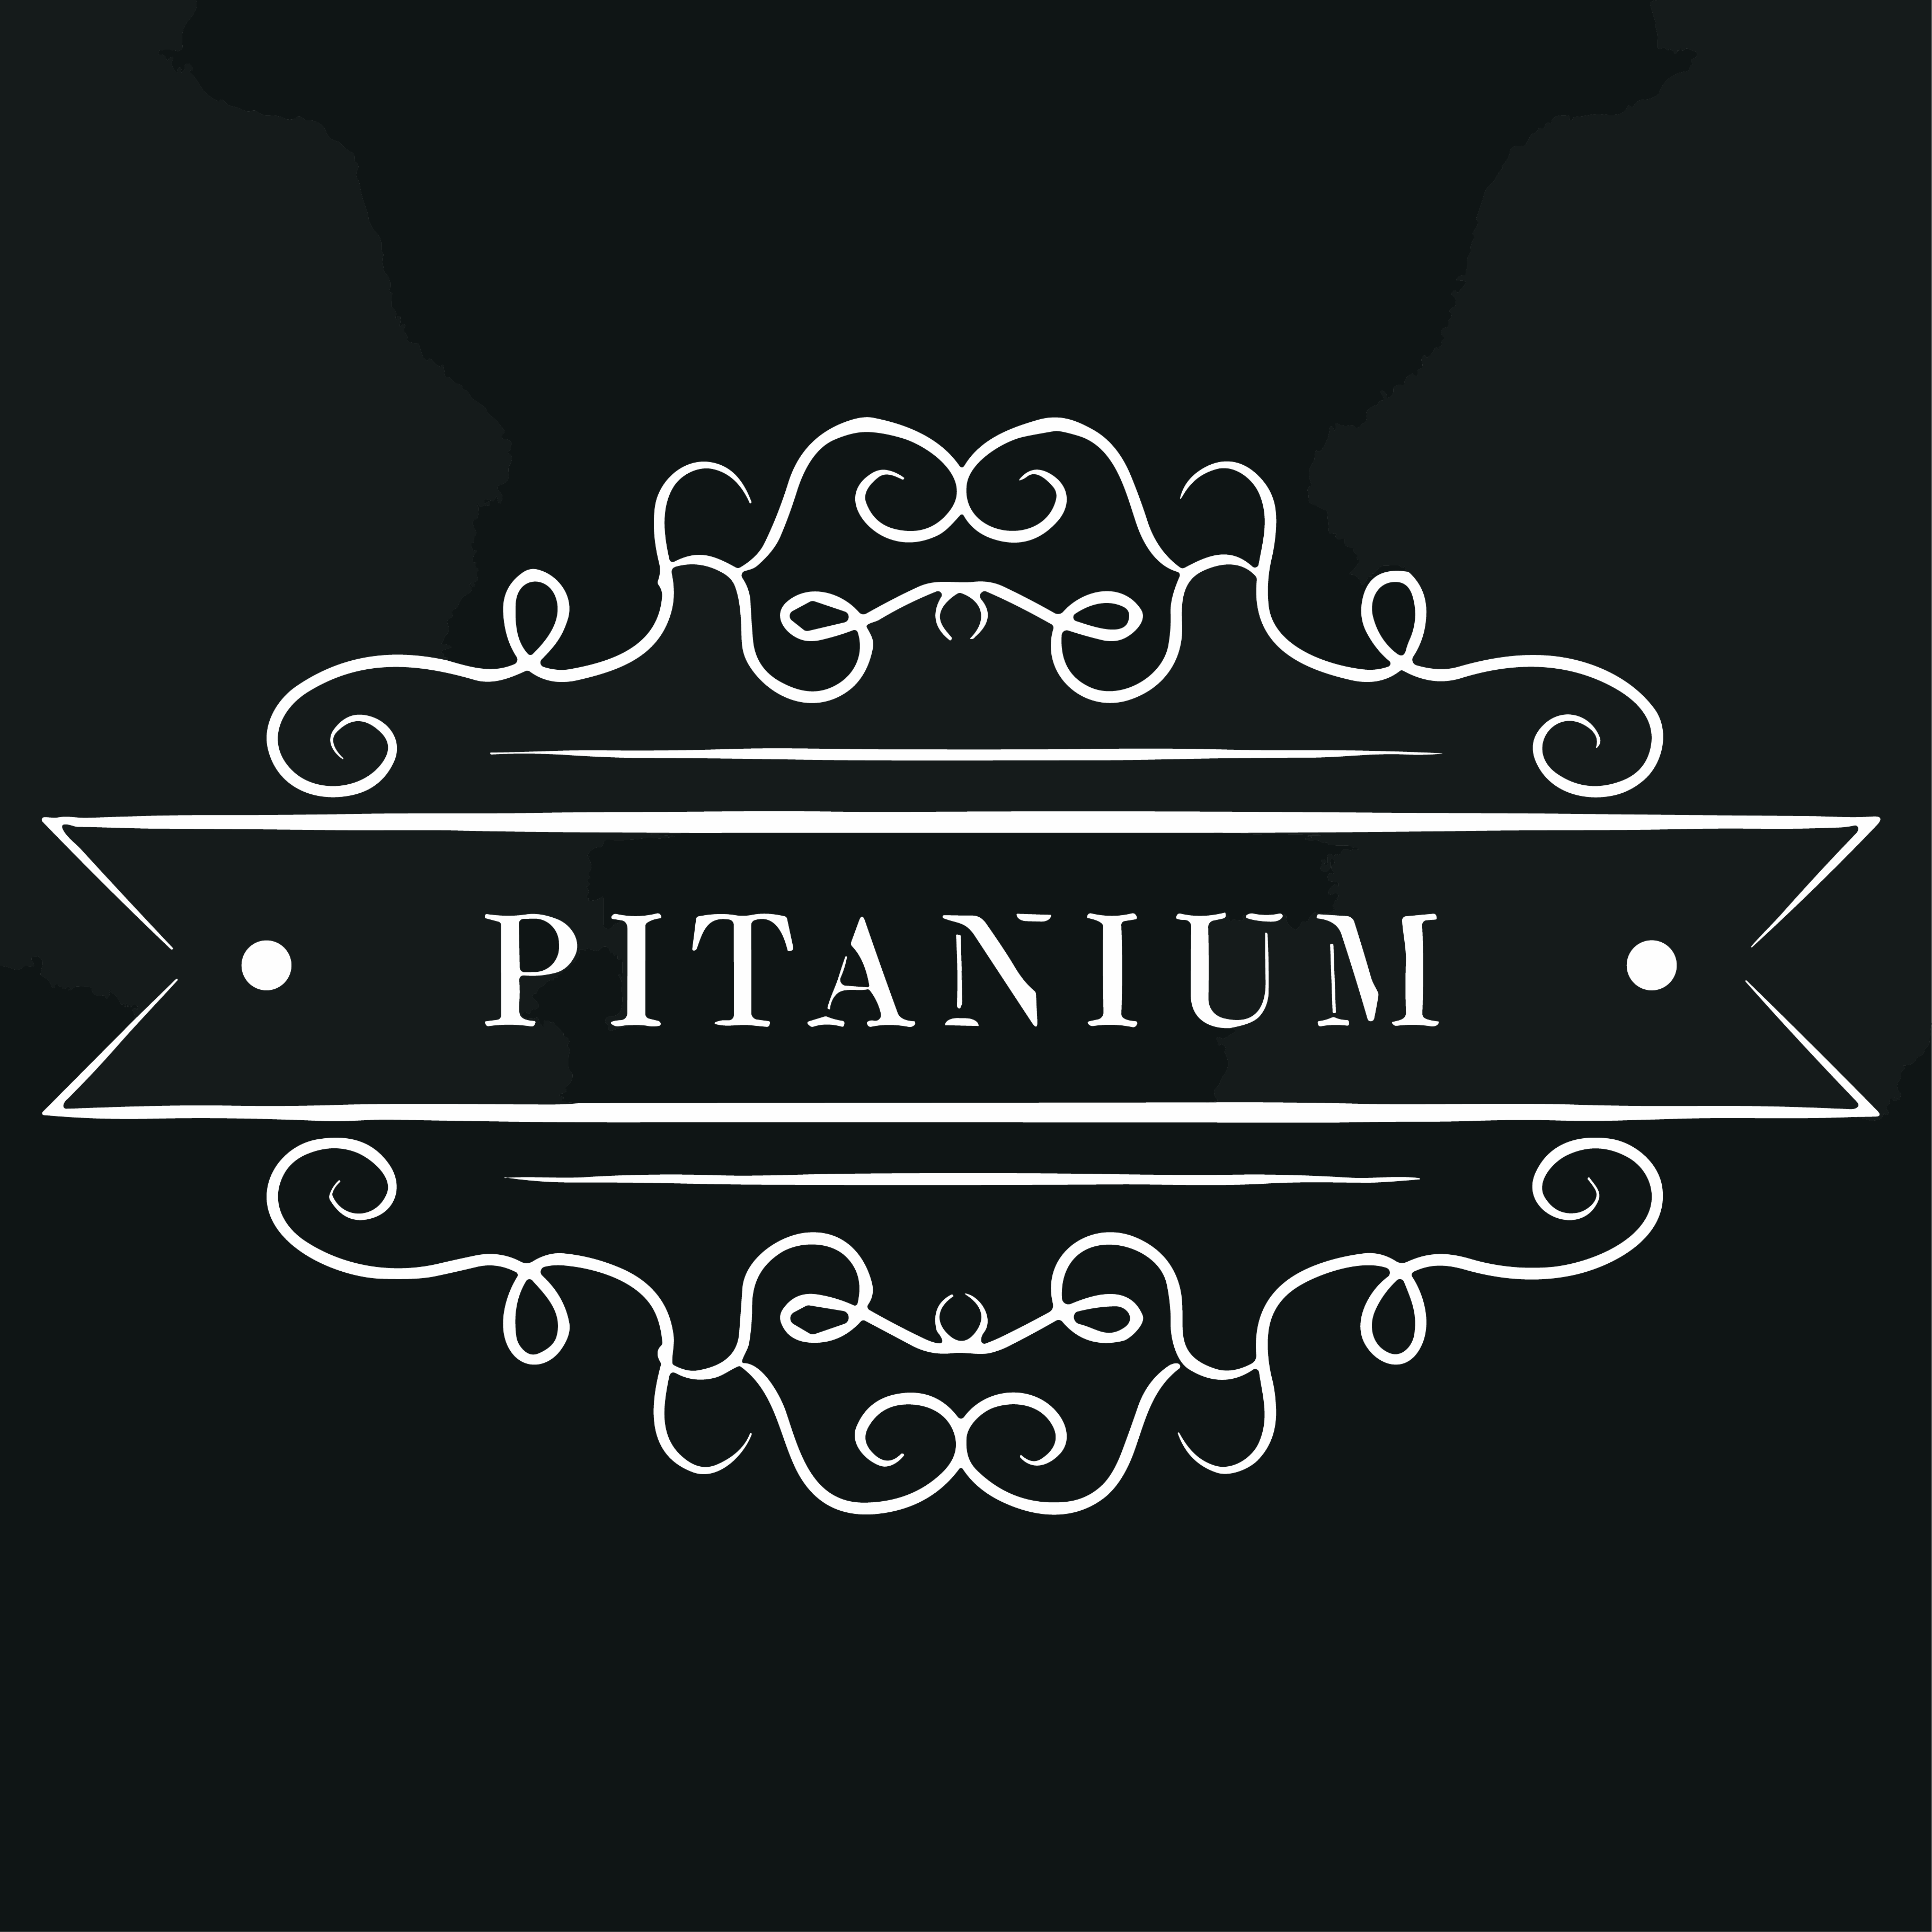 Pitanium